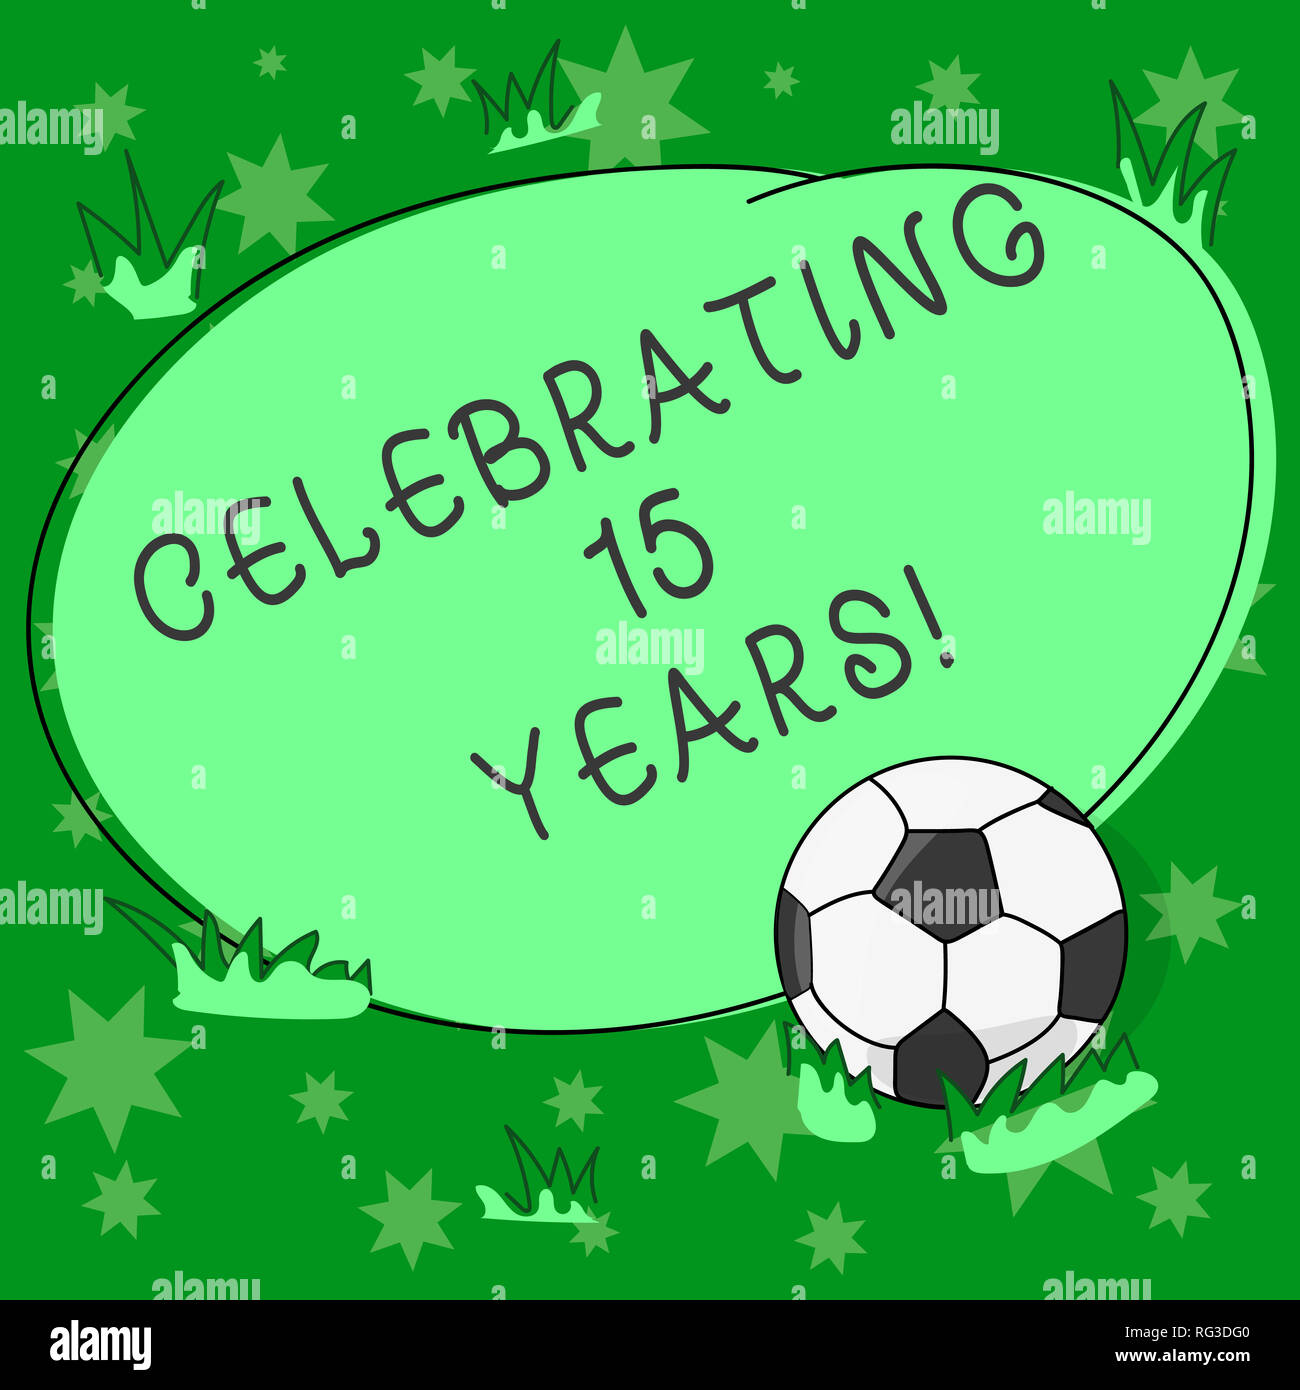 https://c8.alamy.com/compes/rg3dg0/escribir-nota-mostrando-celebra-15-anos-negocios-lucimiento-fotografico-conmemorando-un-dia-especial-despues-de-15-anos-de-aniversario-una-pelota-de-futbol-en-el-cesped-un-rg3dg0.jpg